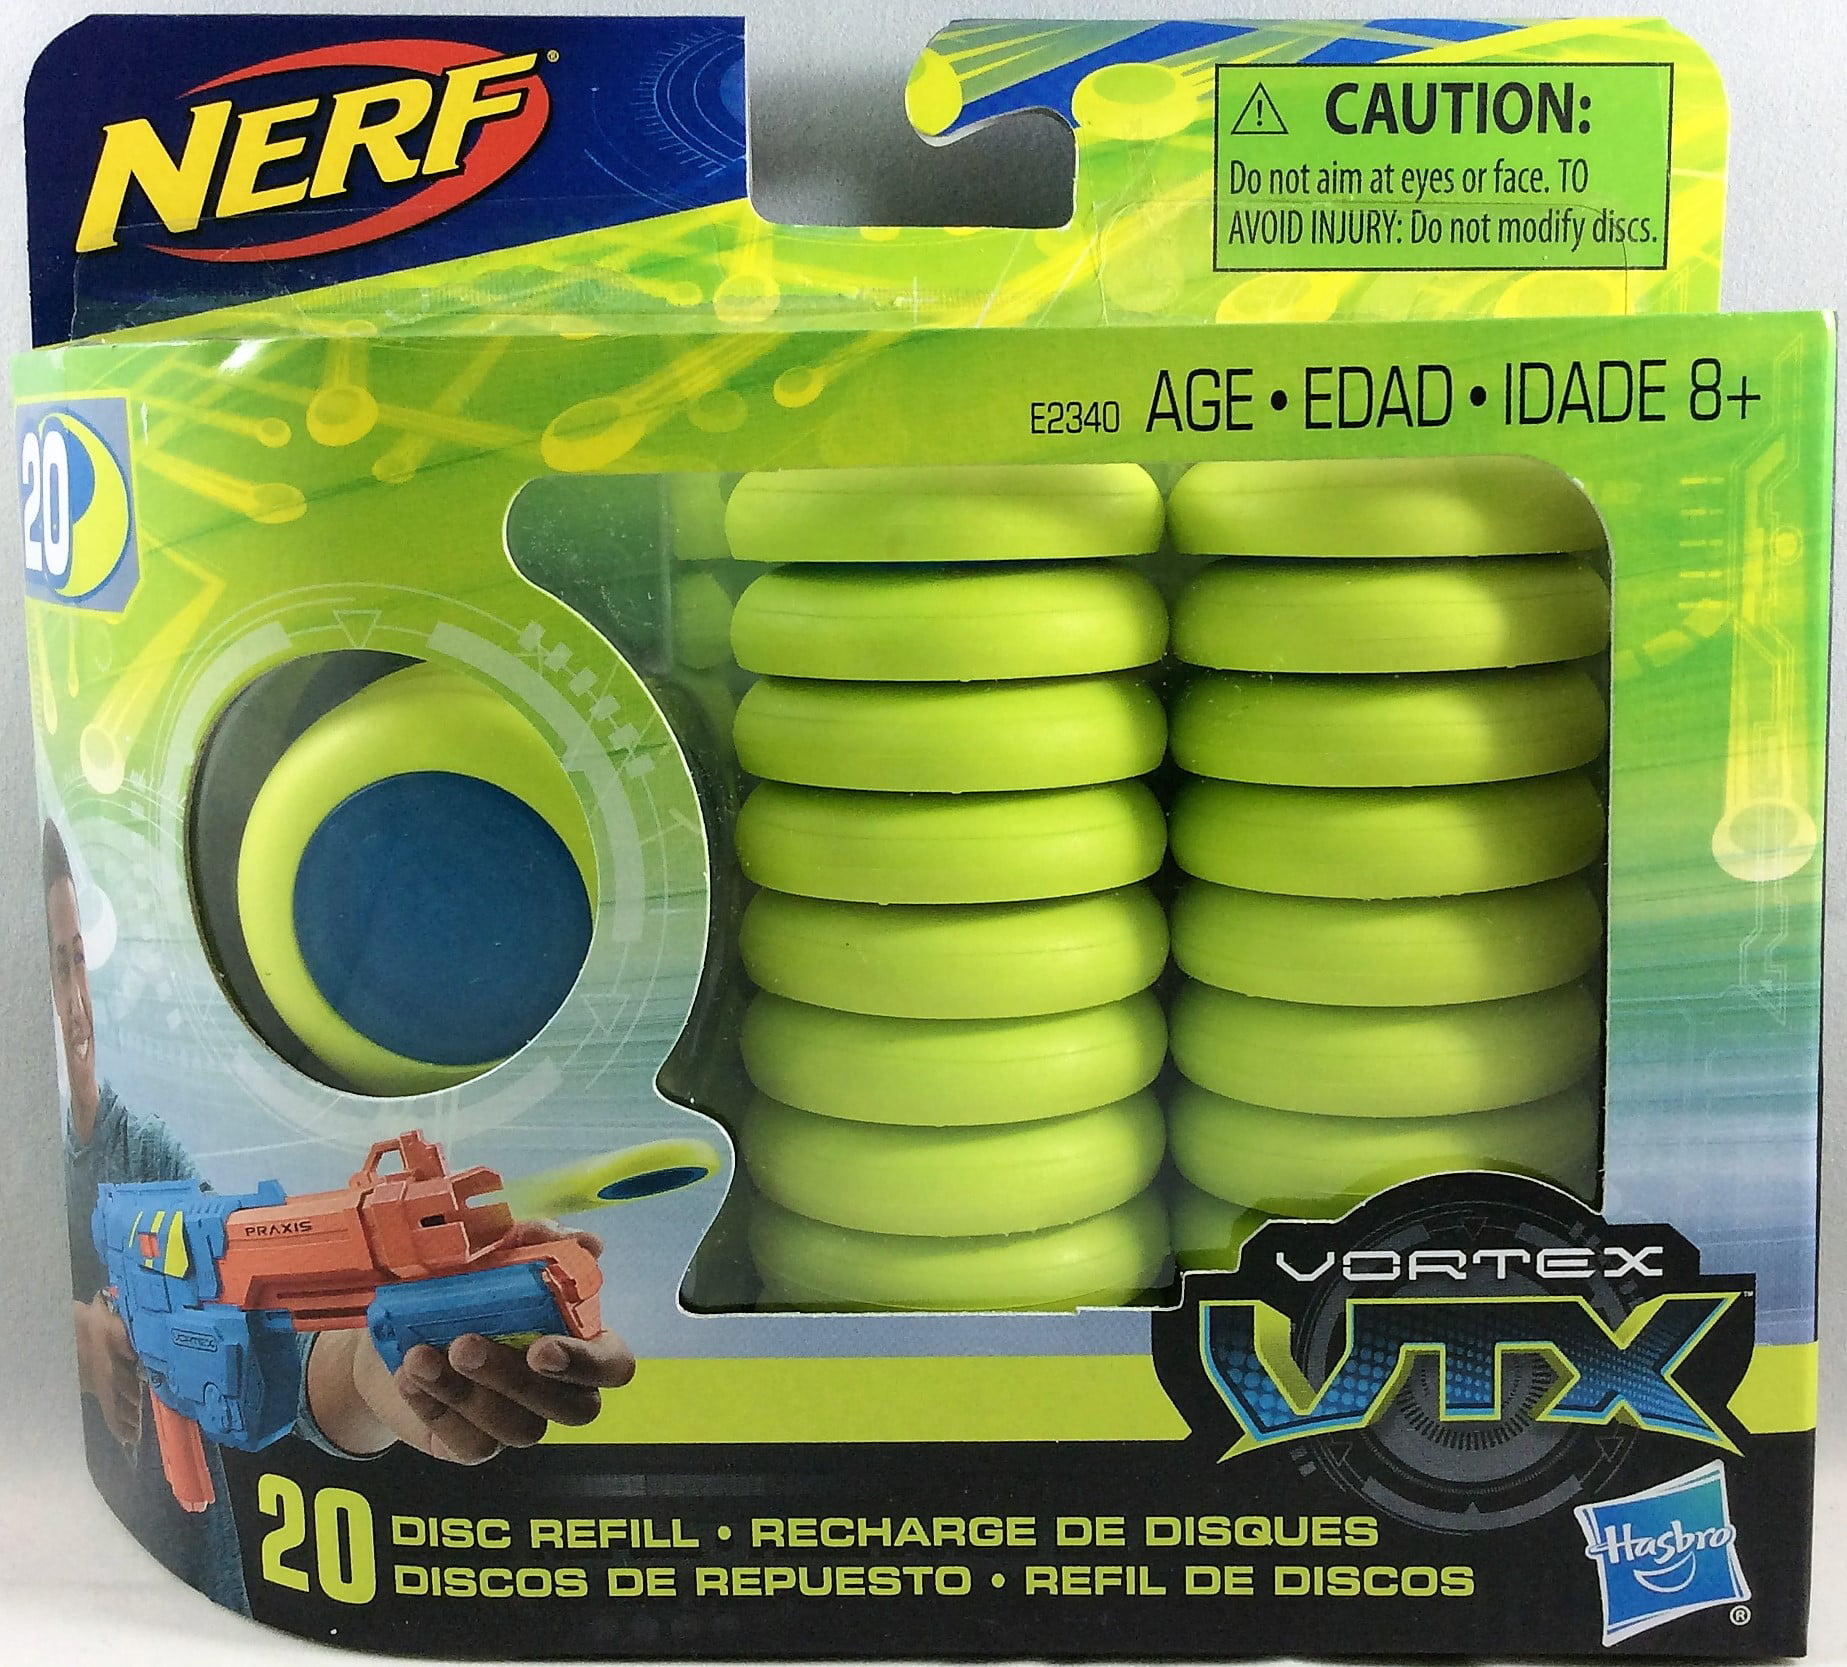 Nerf Vortex VTX Praxis Blaster With 20 Discs Ages 8+ Toy Blaster